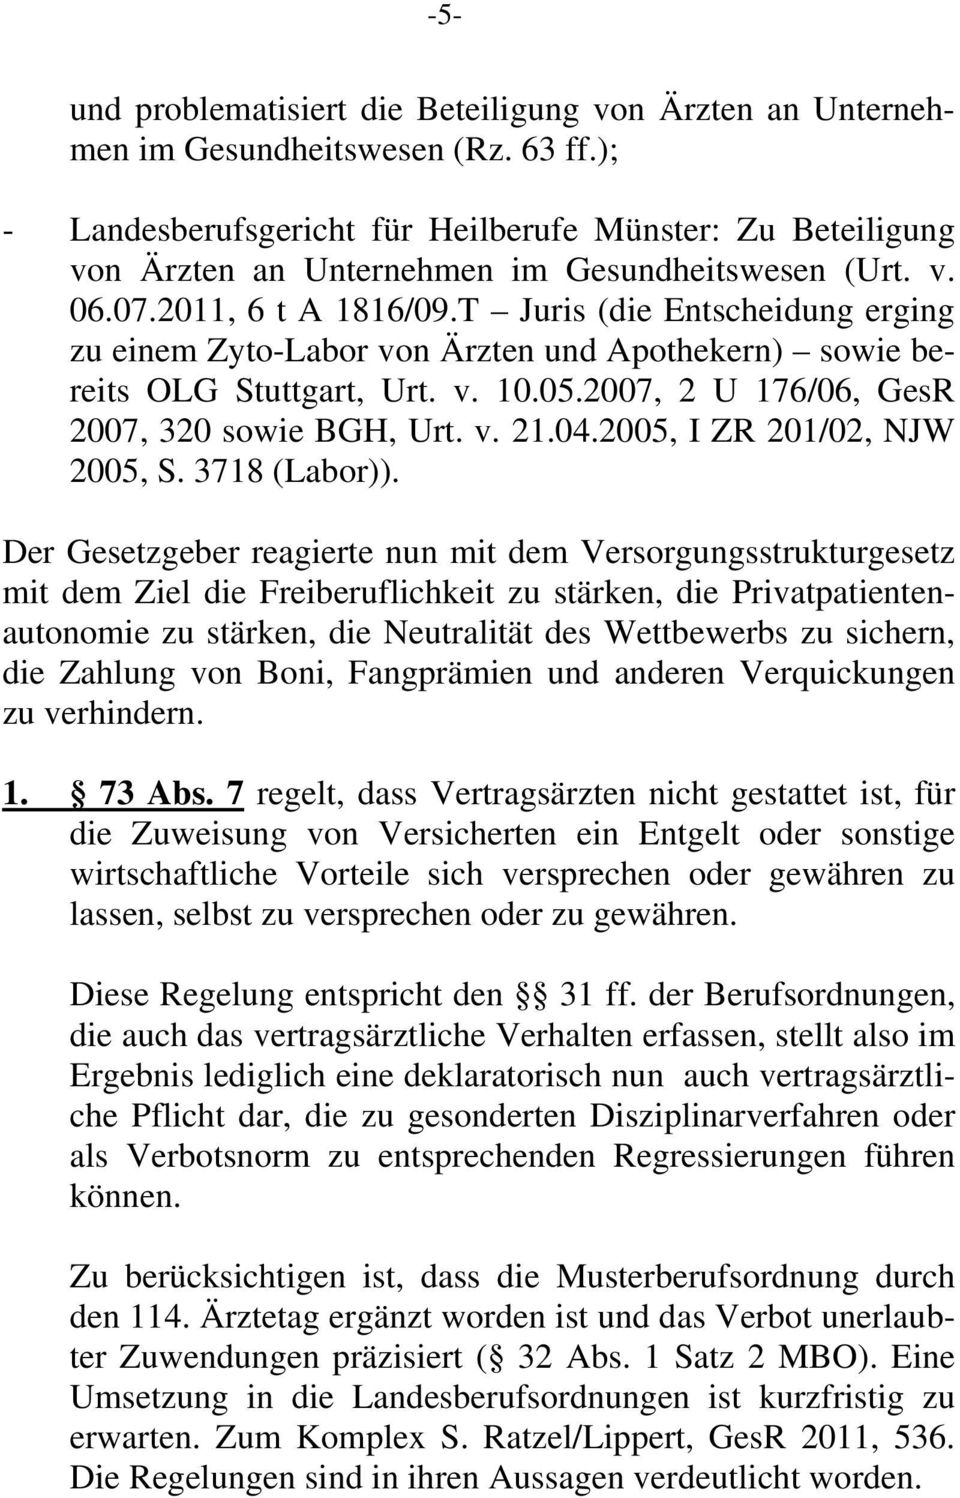 T Juris (die Entscheidung erging zu einem Zyto-Labor von Ärzten und Apothekern) sowie bereits OLG Stuttgart, Urt. v. 10.05.2007, 2 U 176/06, GesR 2007, 320 sowie BGH, Urt. v. 21.04.